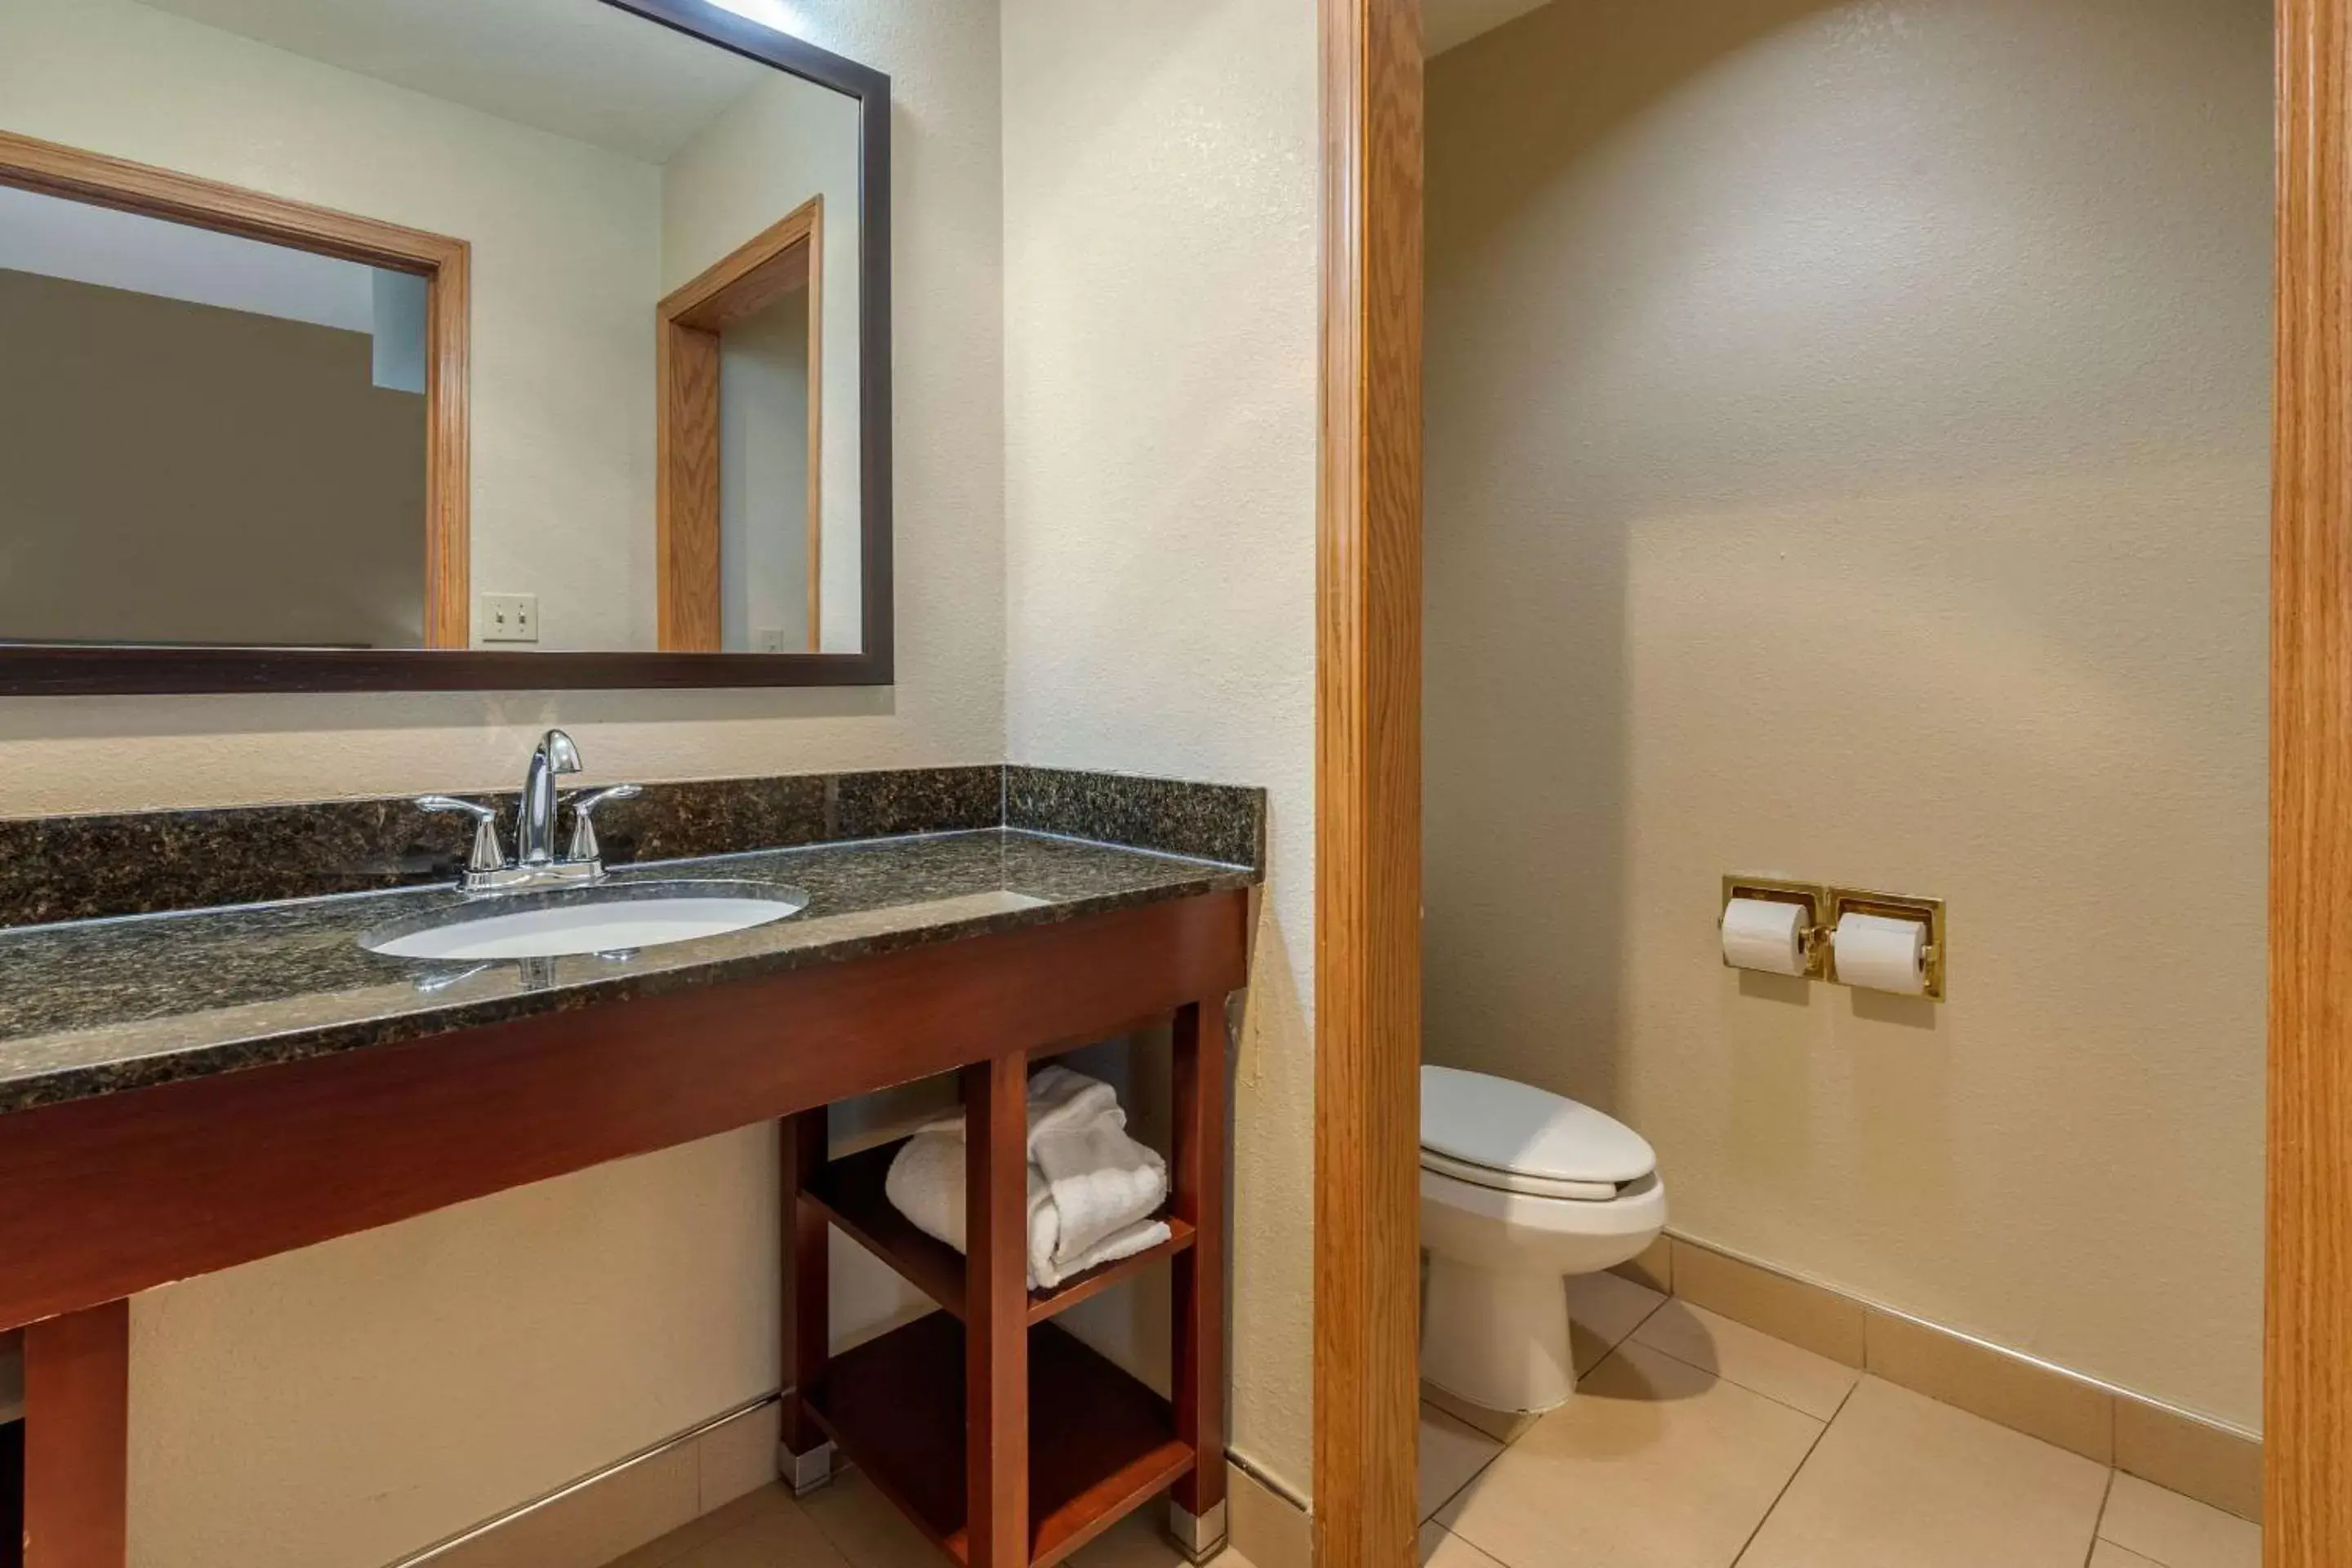 Bedroom, Bathroom in Comfort Inn & Suites Kenosha